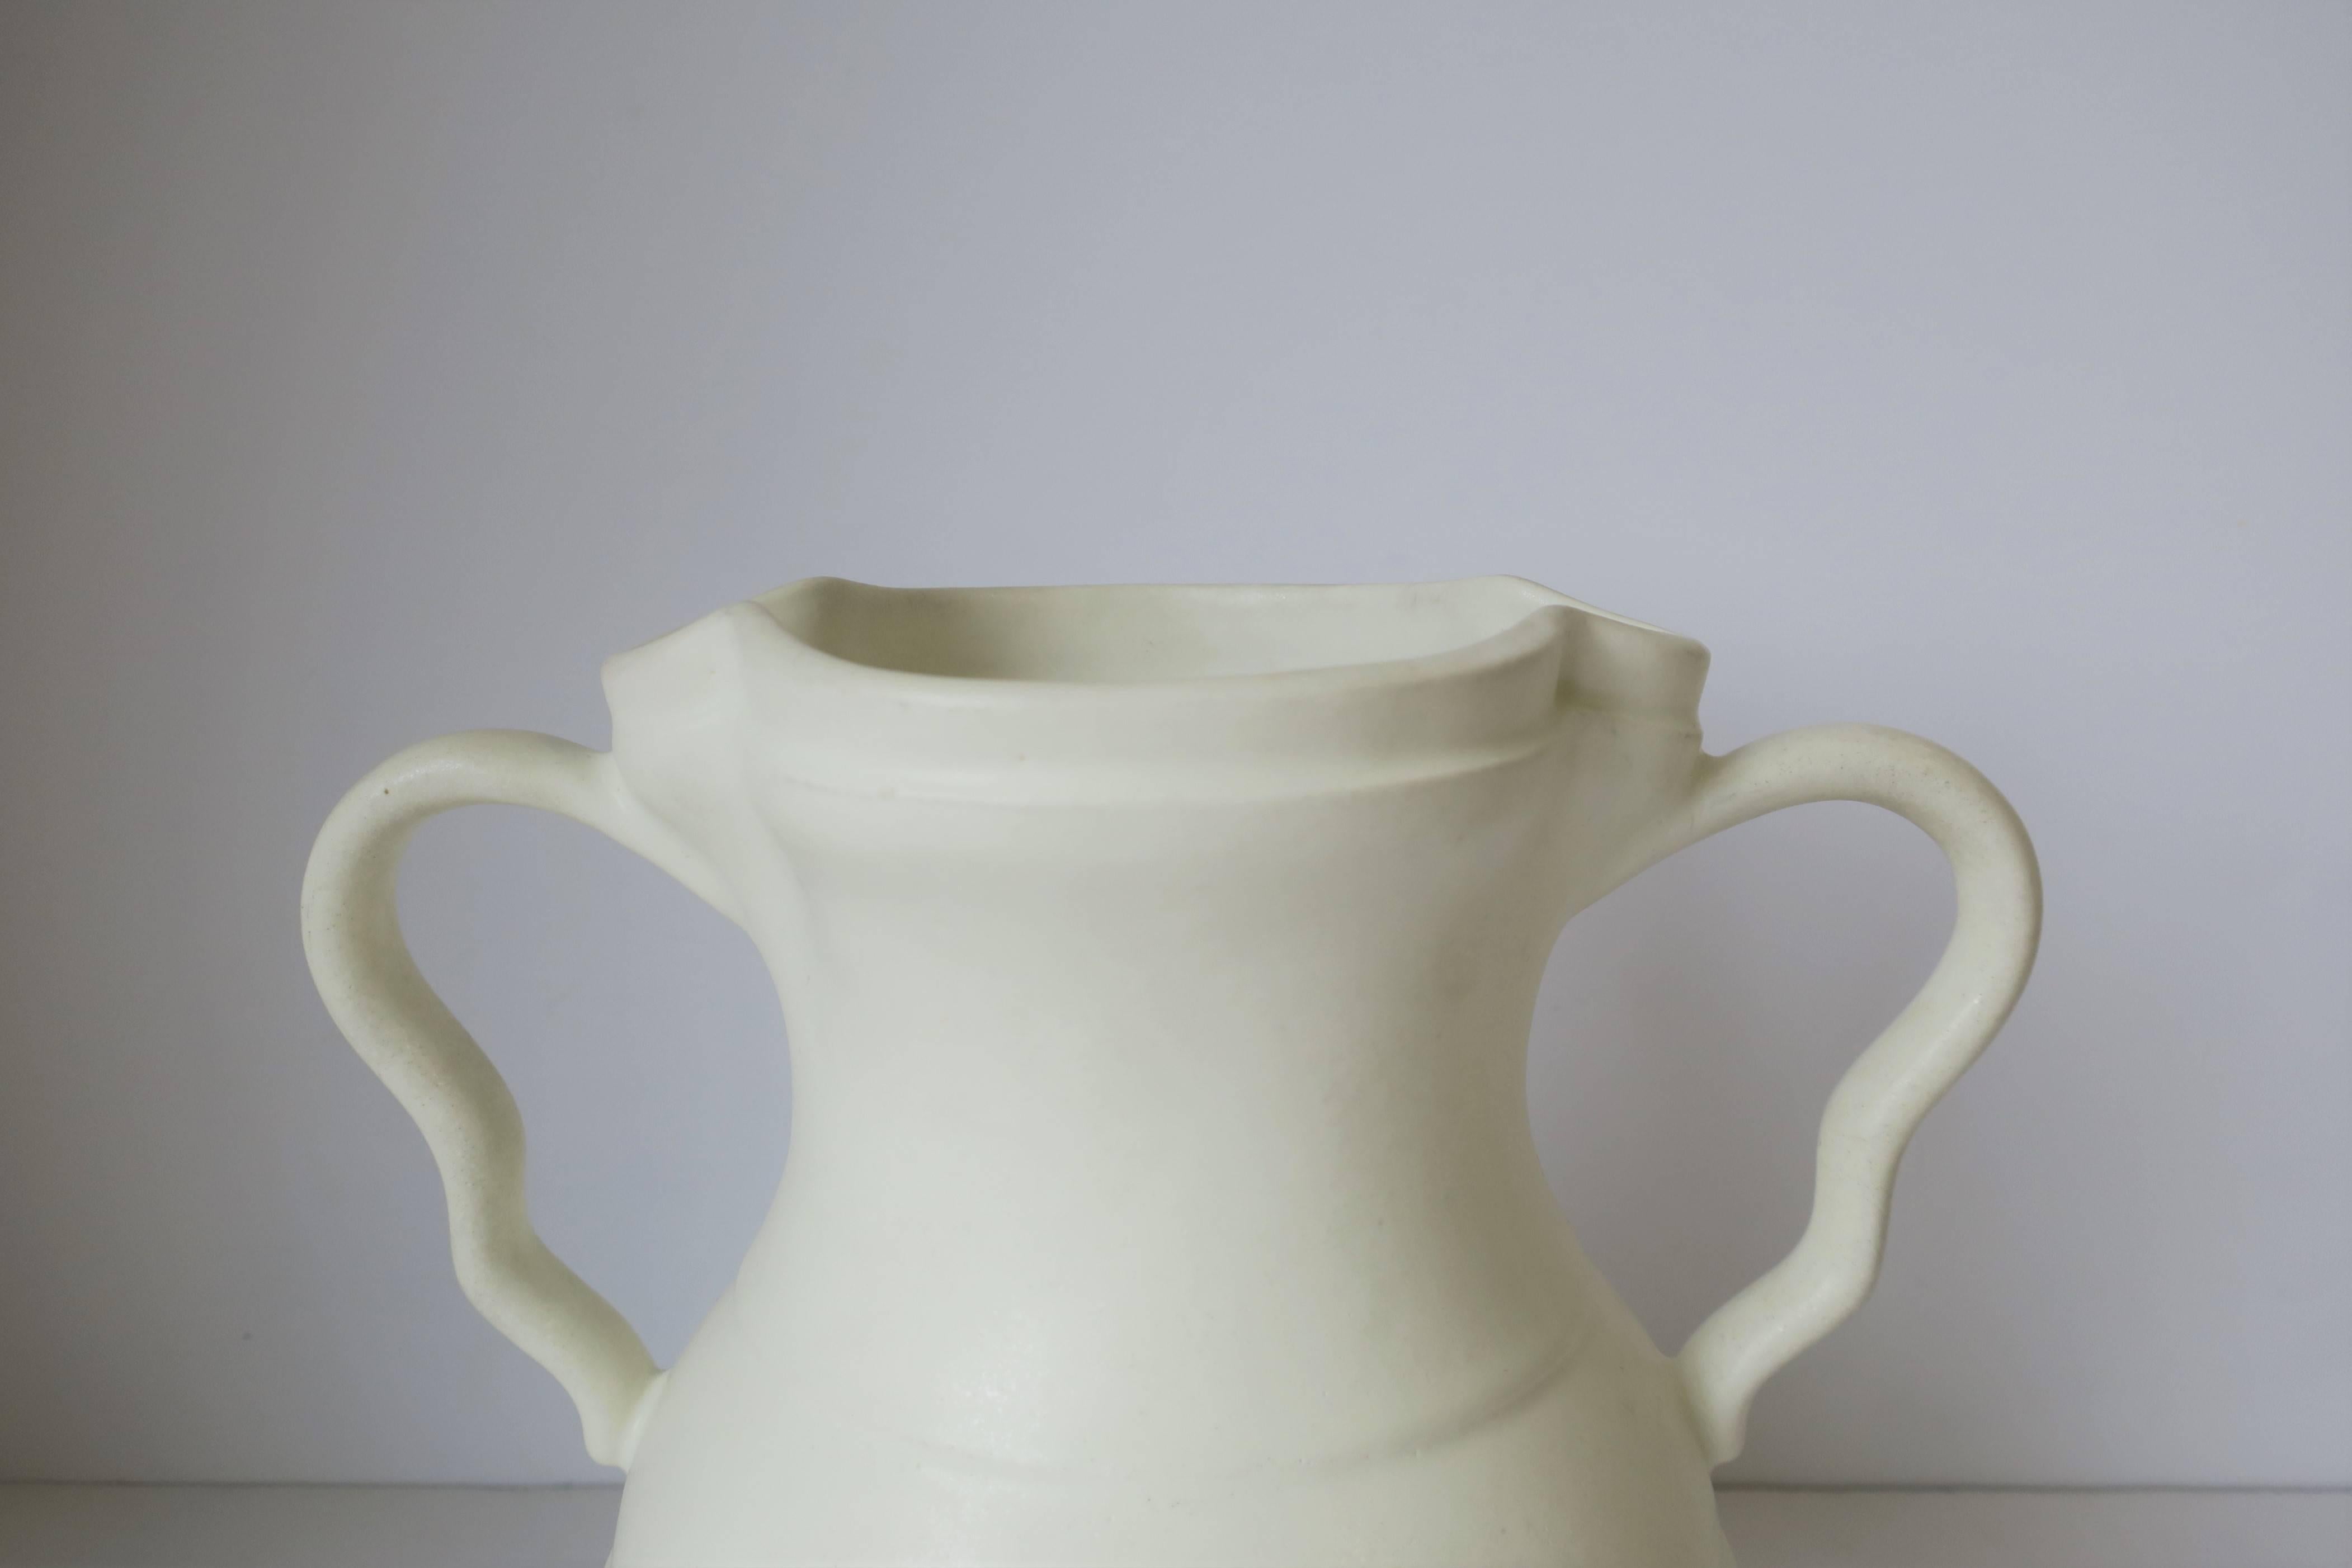 European White Urn Form Ceramic Pottery Vase 4